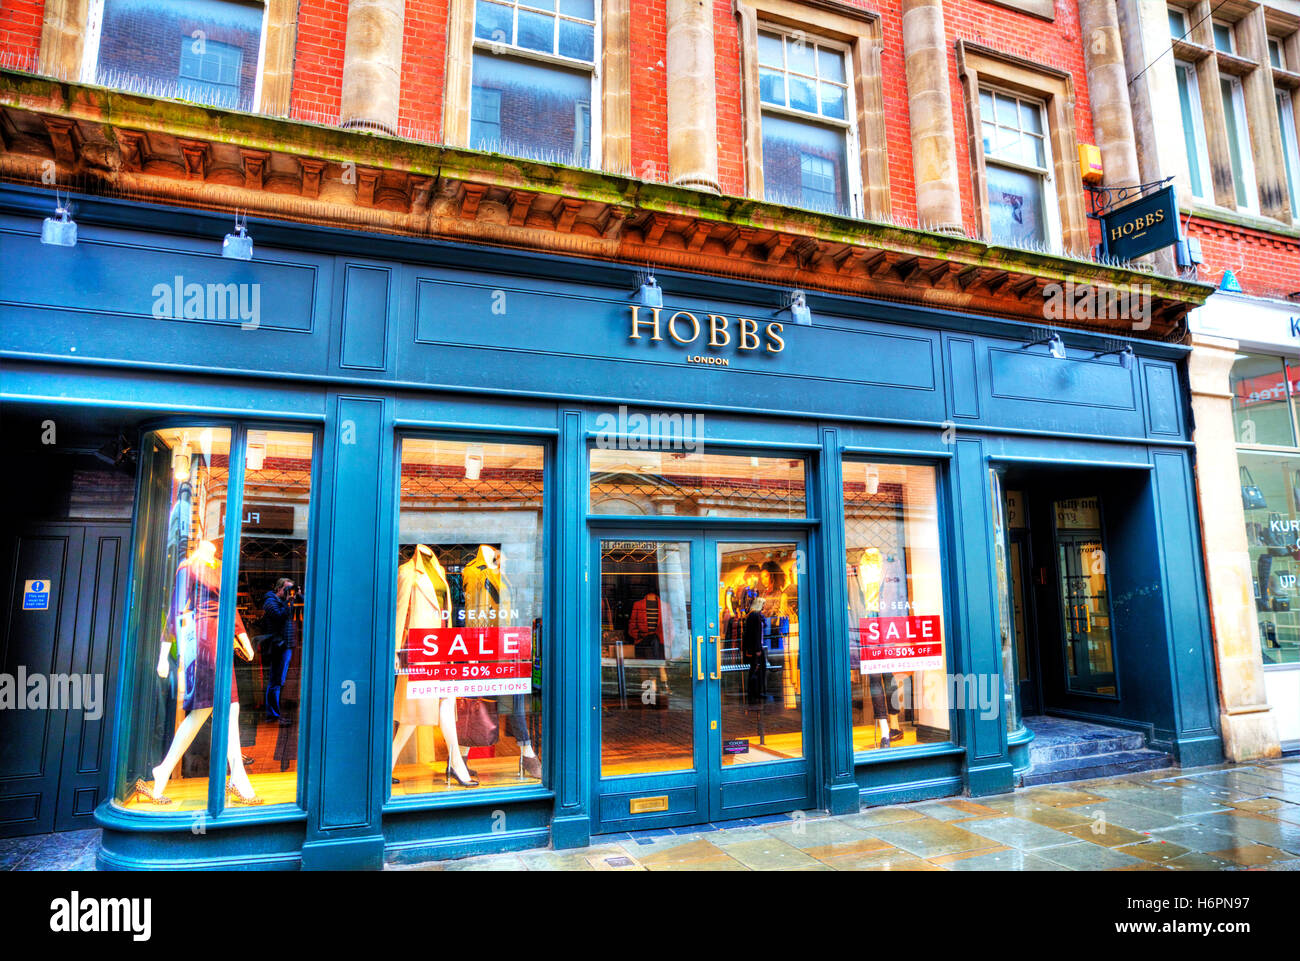 Hobbs Fashion London tienda de ropa tienda de ropa tiendas de High street, Nottingham, Reino Unido GB signo exterior fachada signos almacena Foto de stock